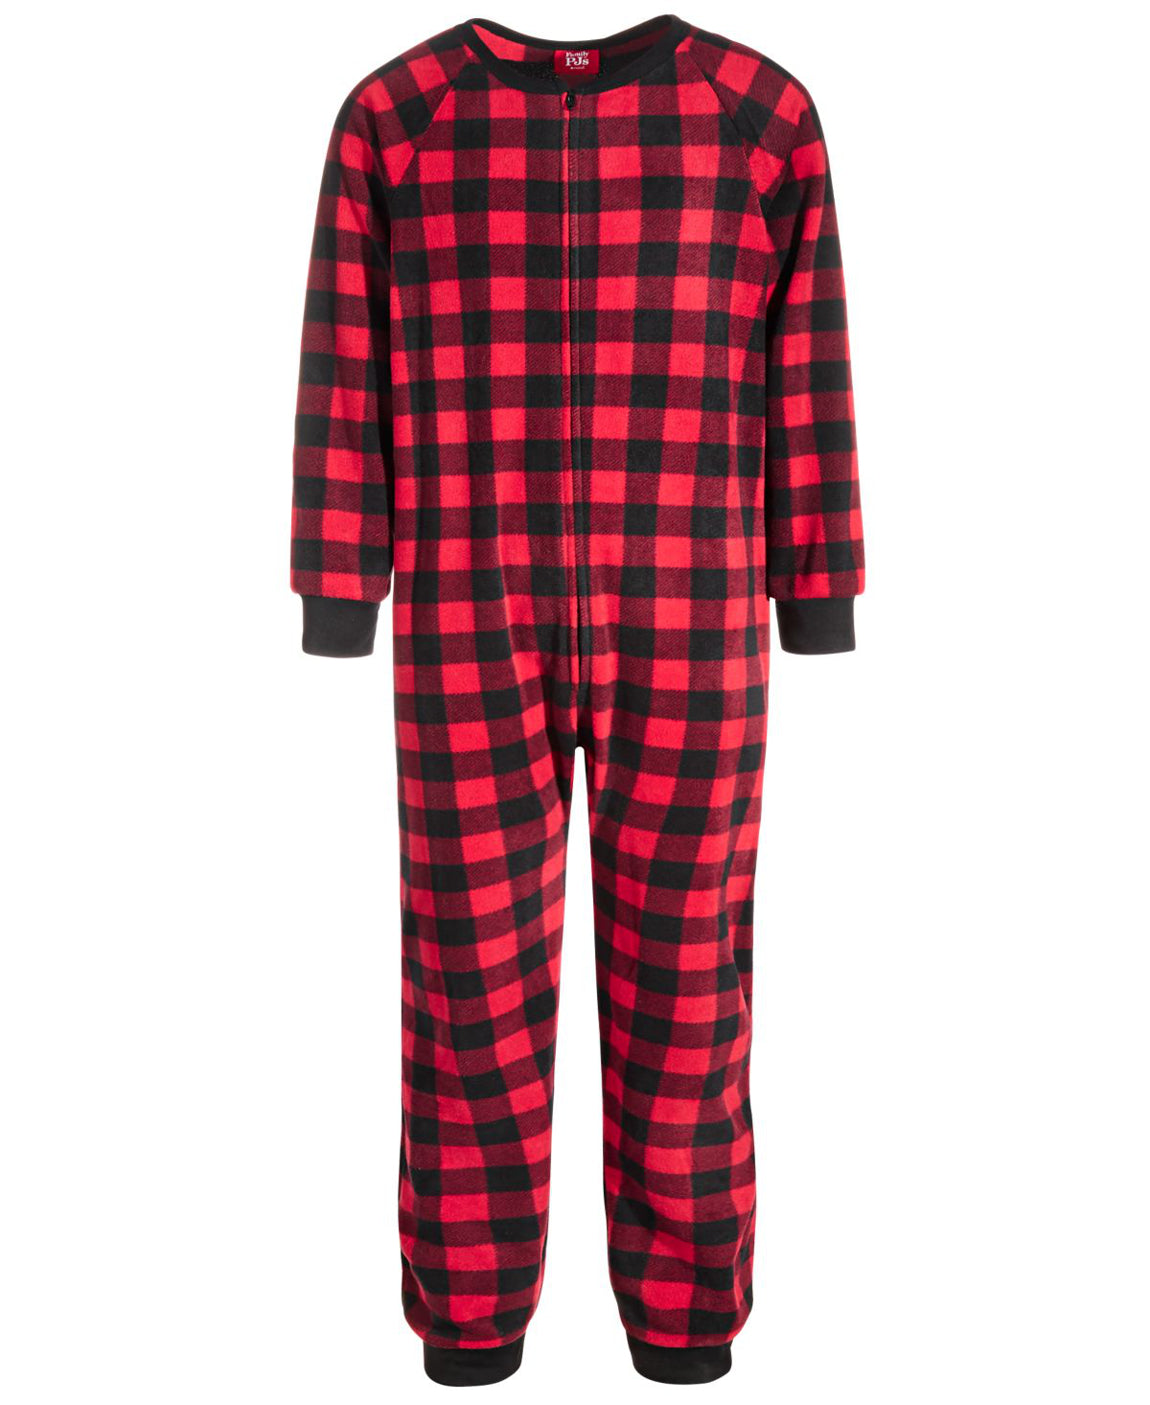 Family Pajamas Little & Big Kids Matching 1-Piece Red Check Printed Pajamas